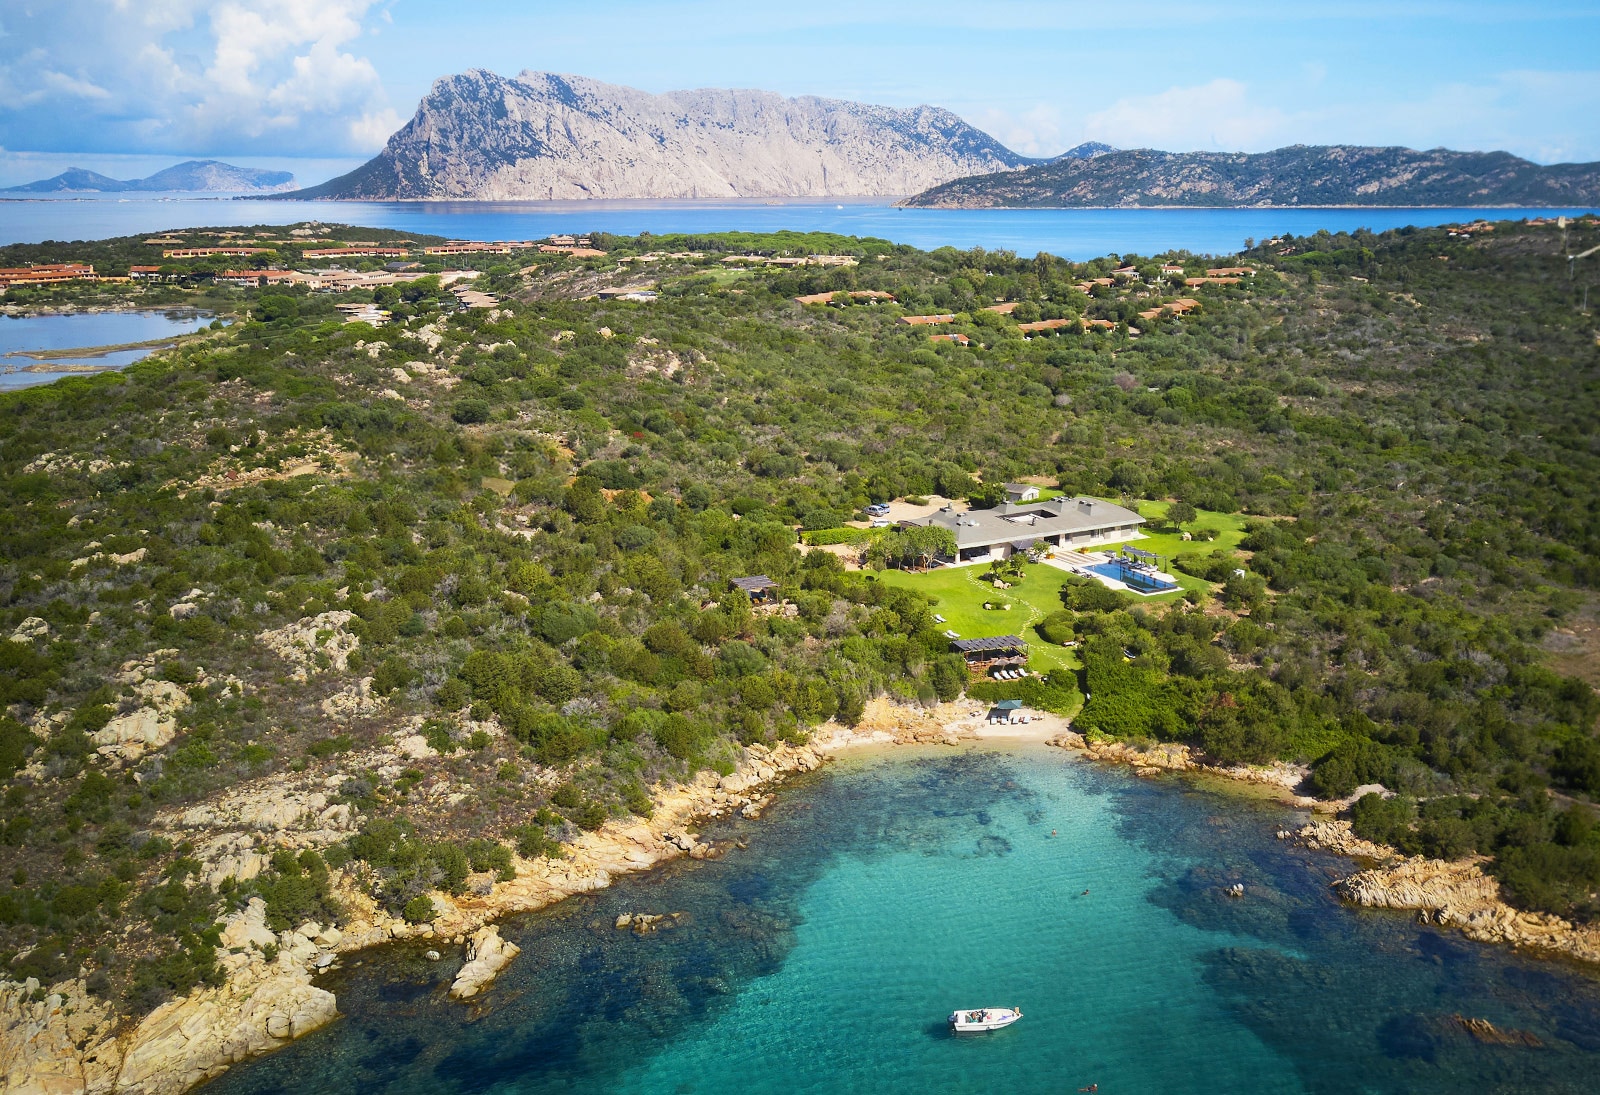 Luxury Villa Alba in Sardinia for Rent | Villa with private pool and sea view